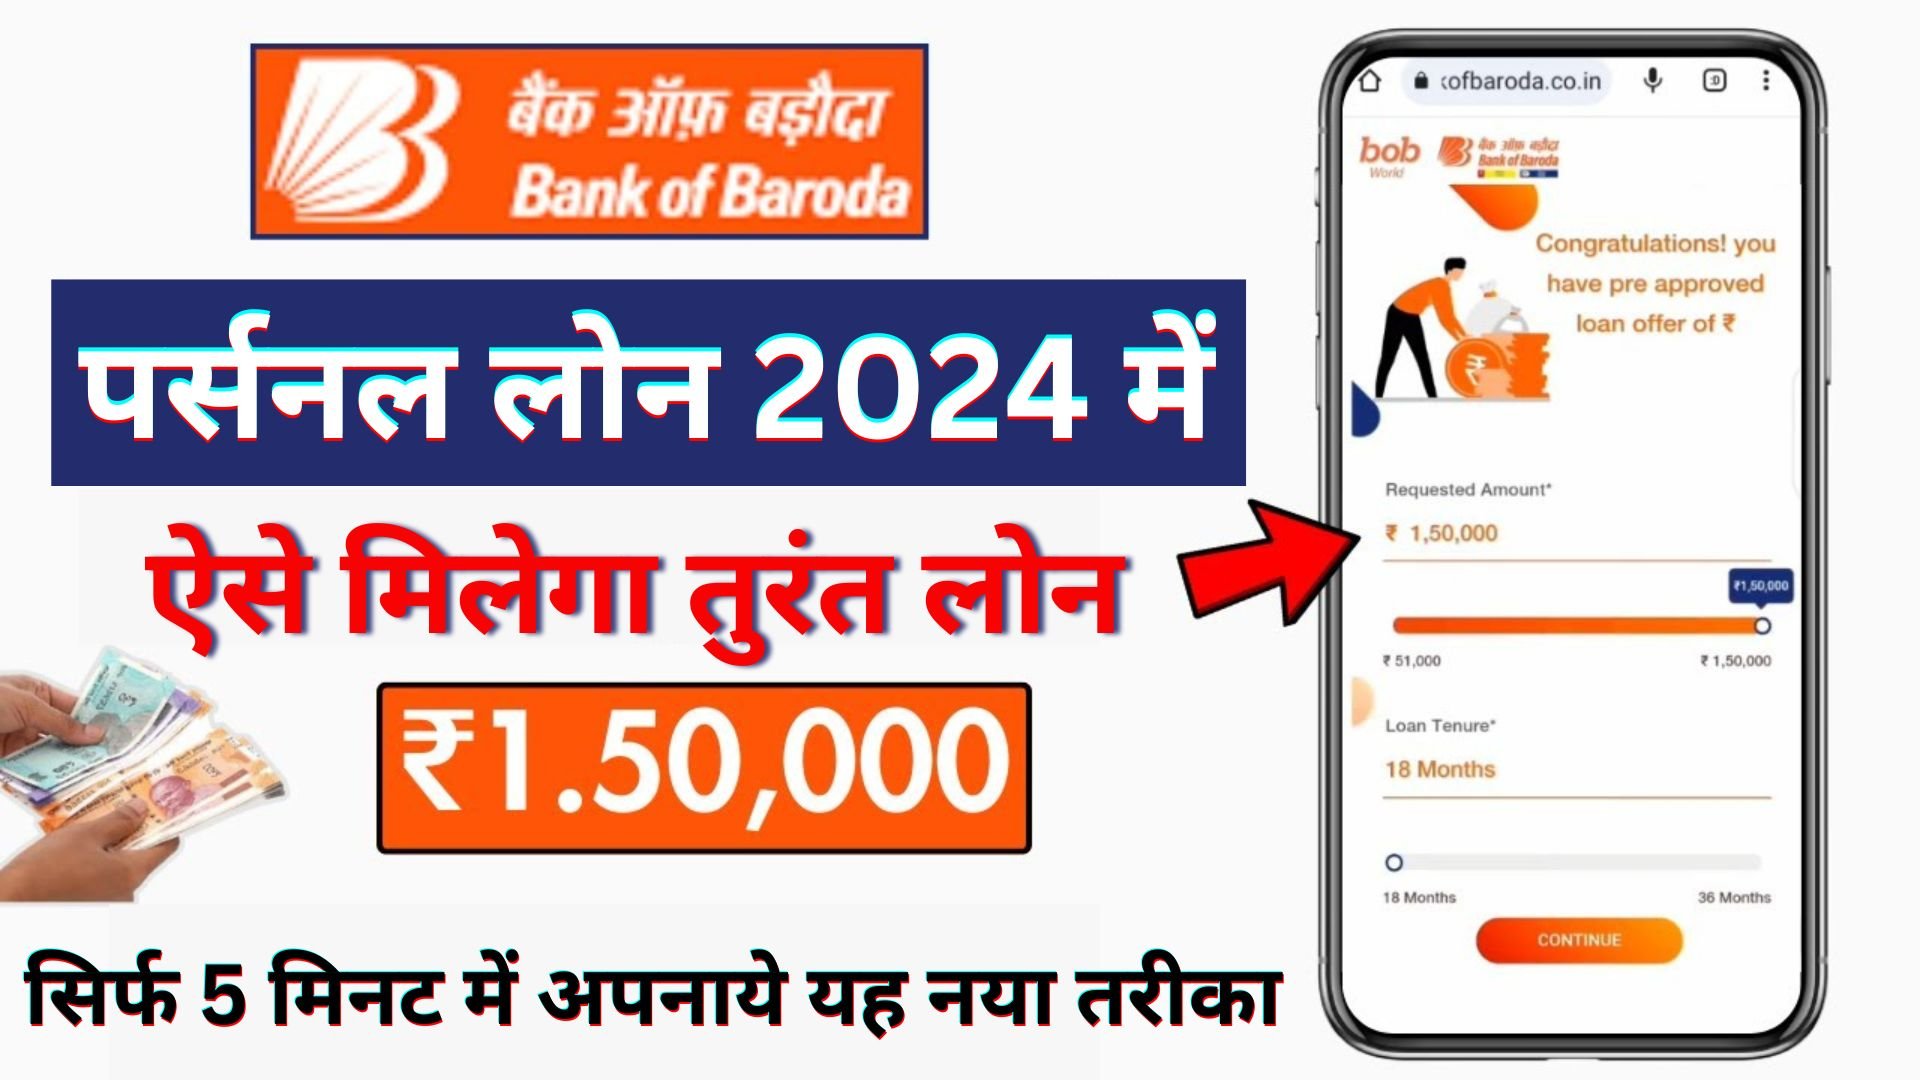 Bank of Baroda Personal Loan Apply 2024 : अब केवल आधार कार्ड से 2 लाख का लोन बिना किसी परेशानी के फटाफट